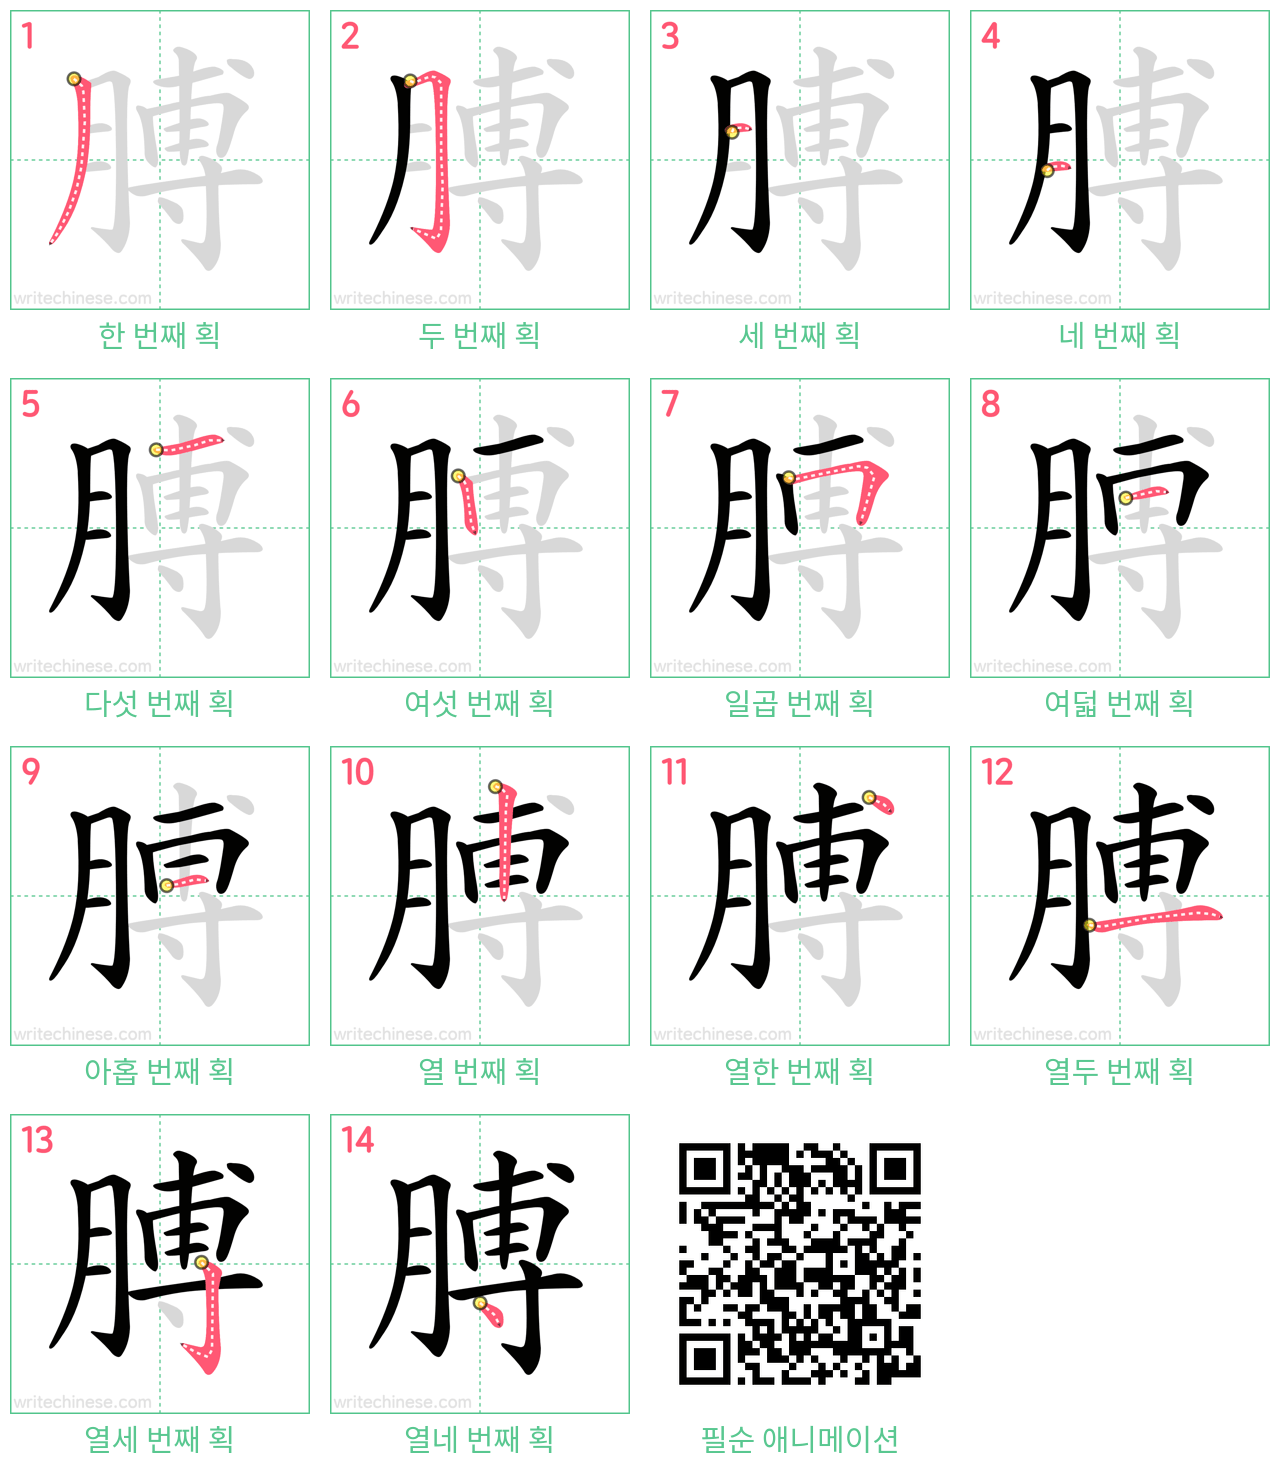 膊 step-by-step stroke order diagrams